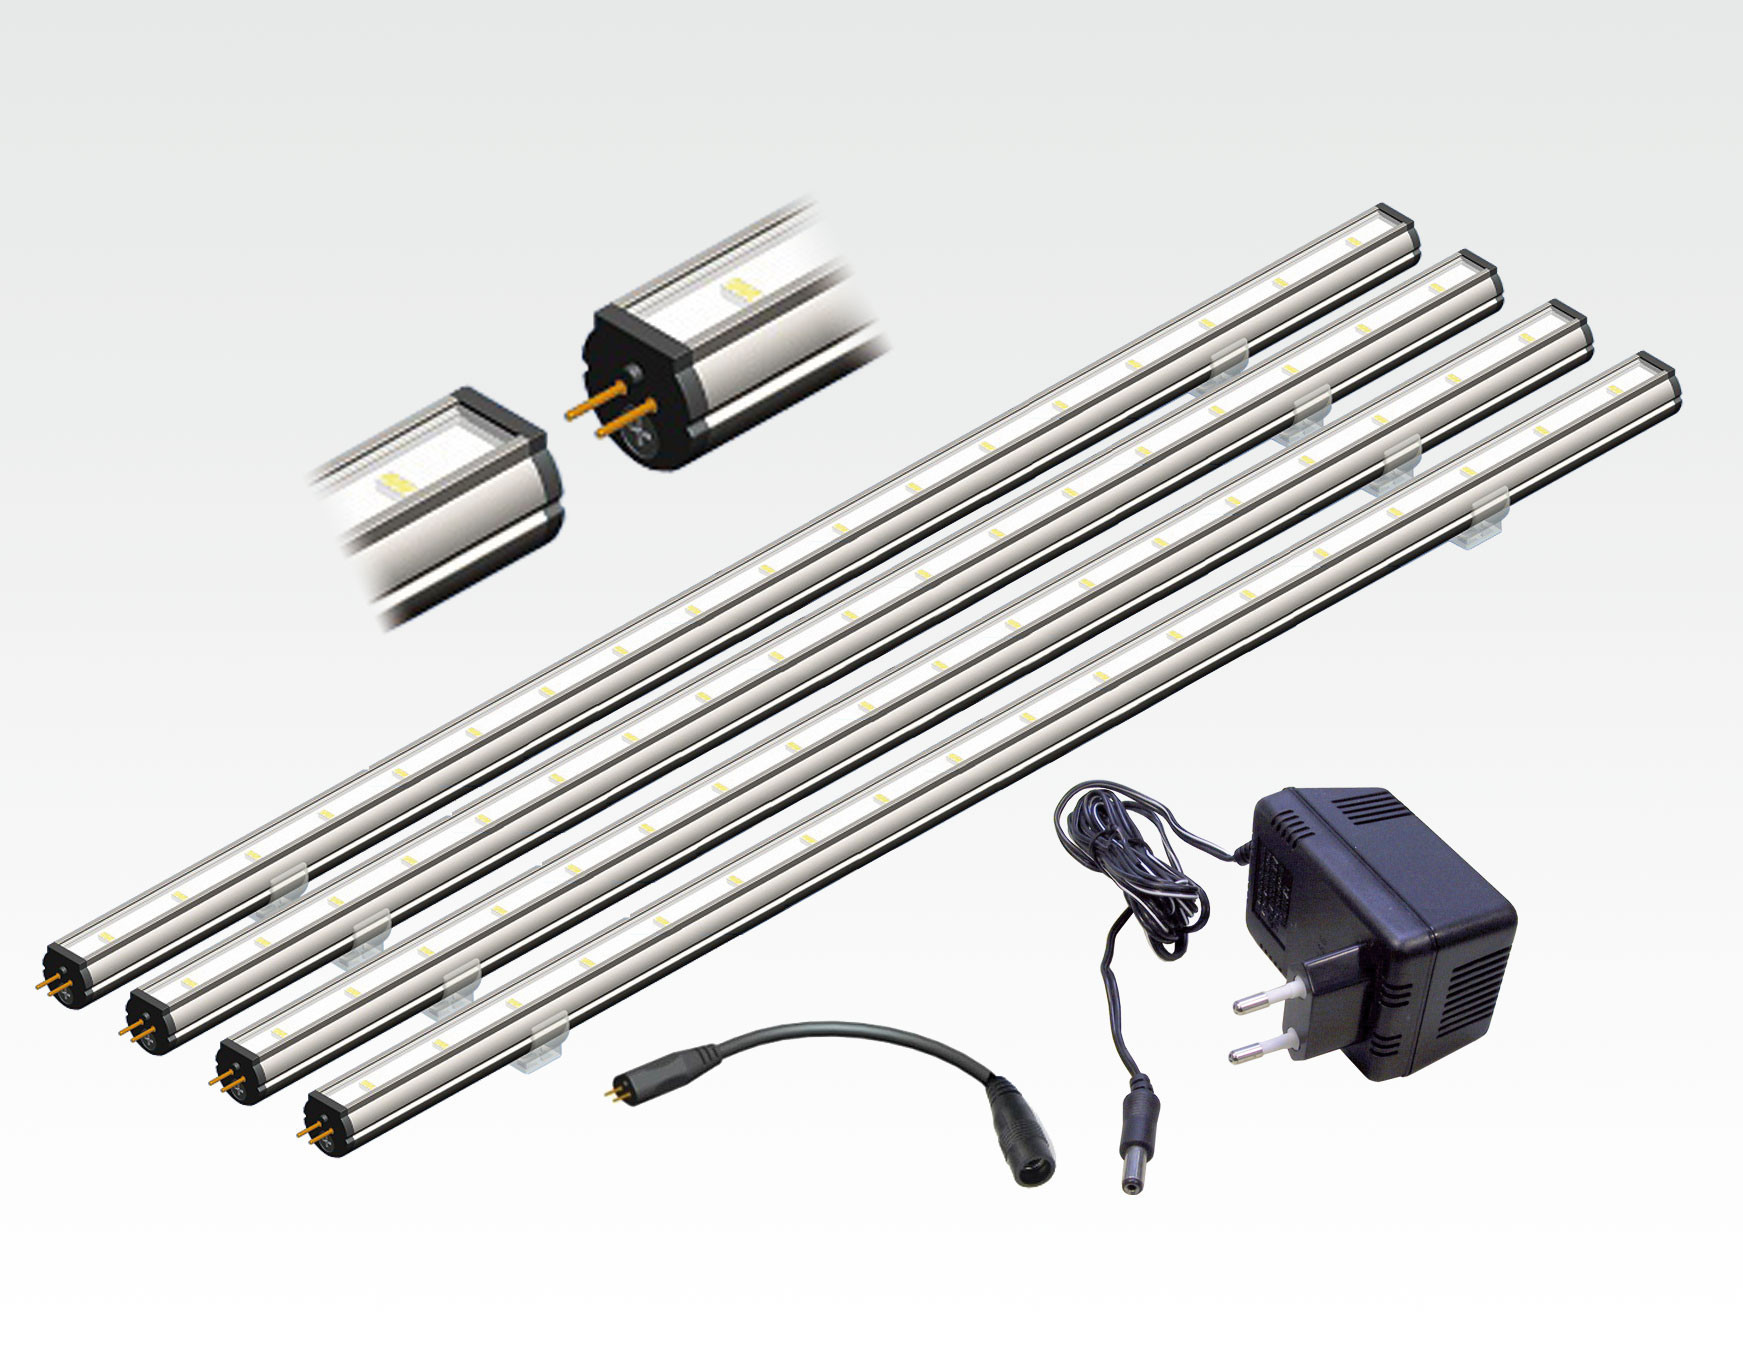 StartKlar Paket LED Vitrinenbeleuchtung inkl. Netzteil - Micro 12VDC - LED  Leisten - Streifen, Leisten & Module - LED Beleuchtung SSAMLIGHT -  Elektrotechnik